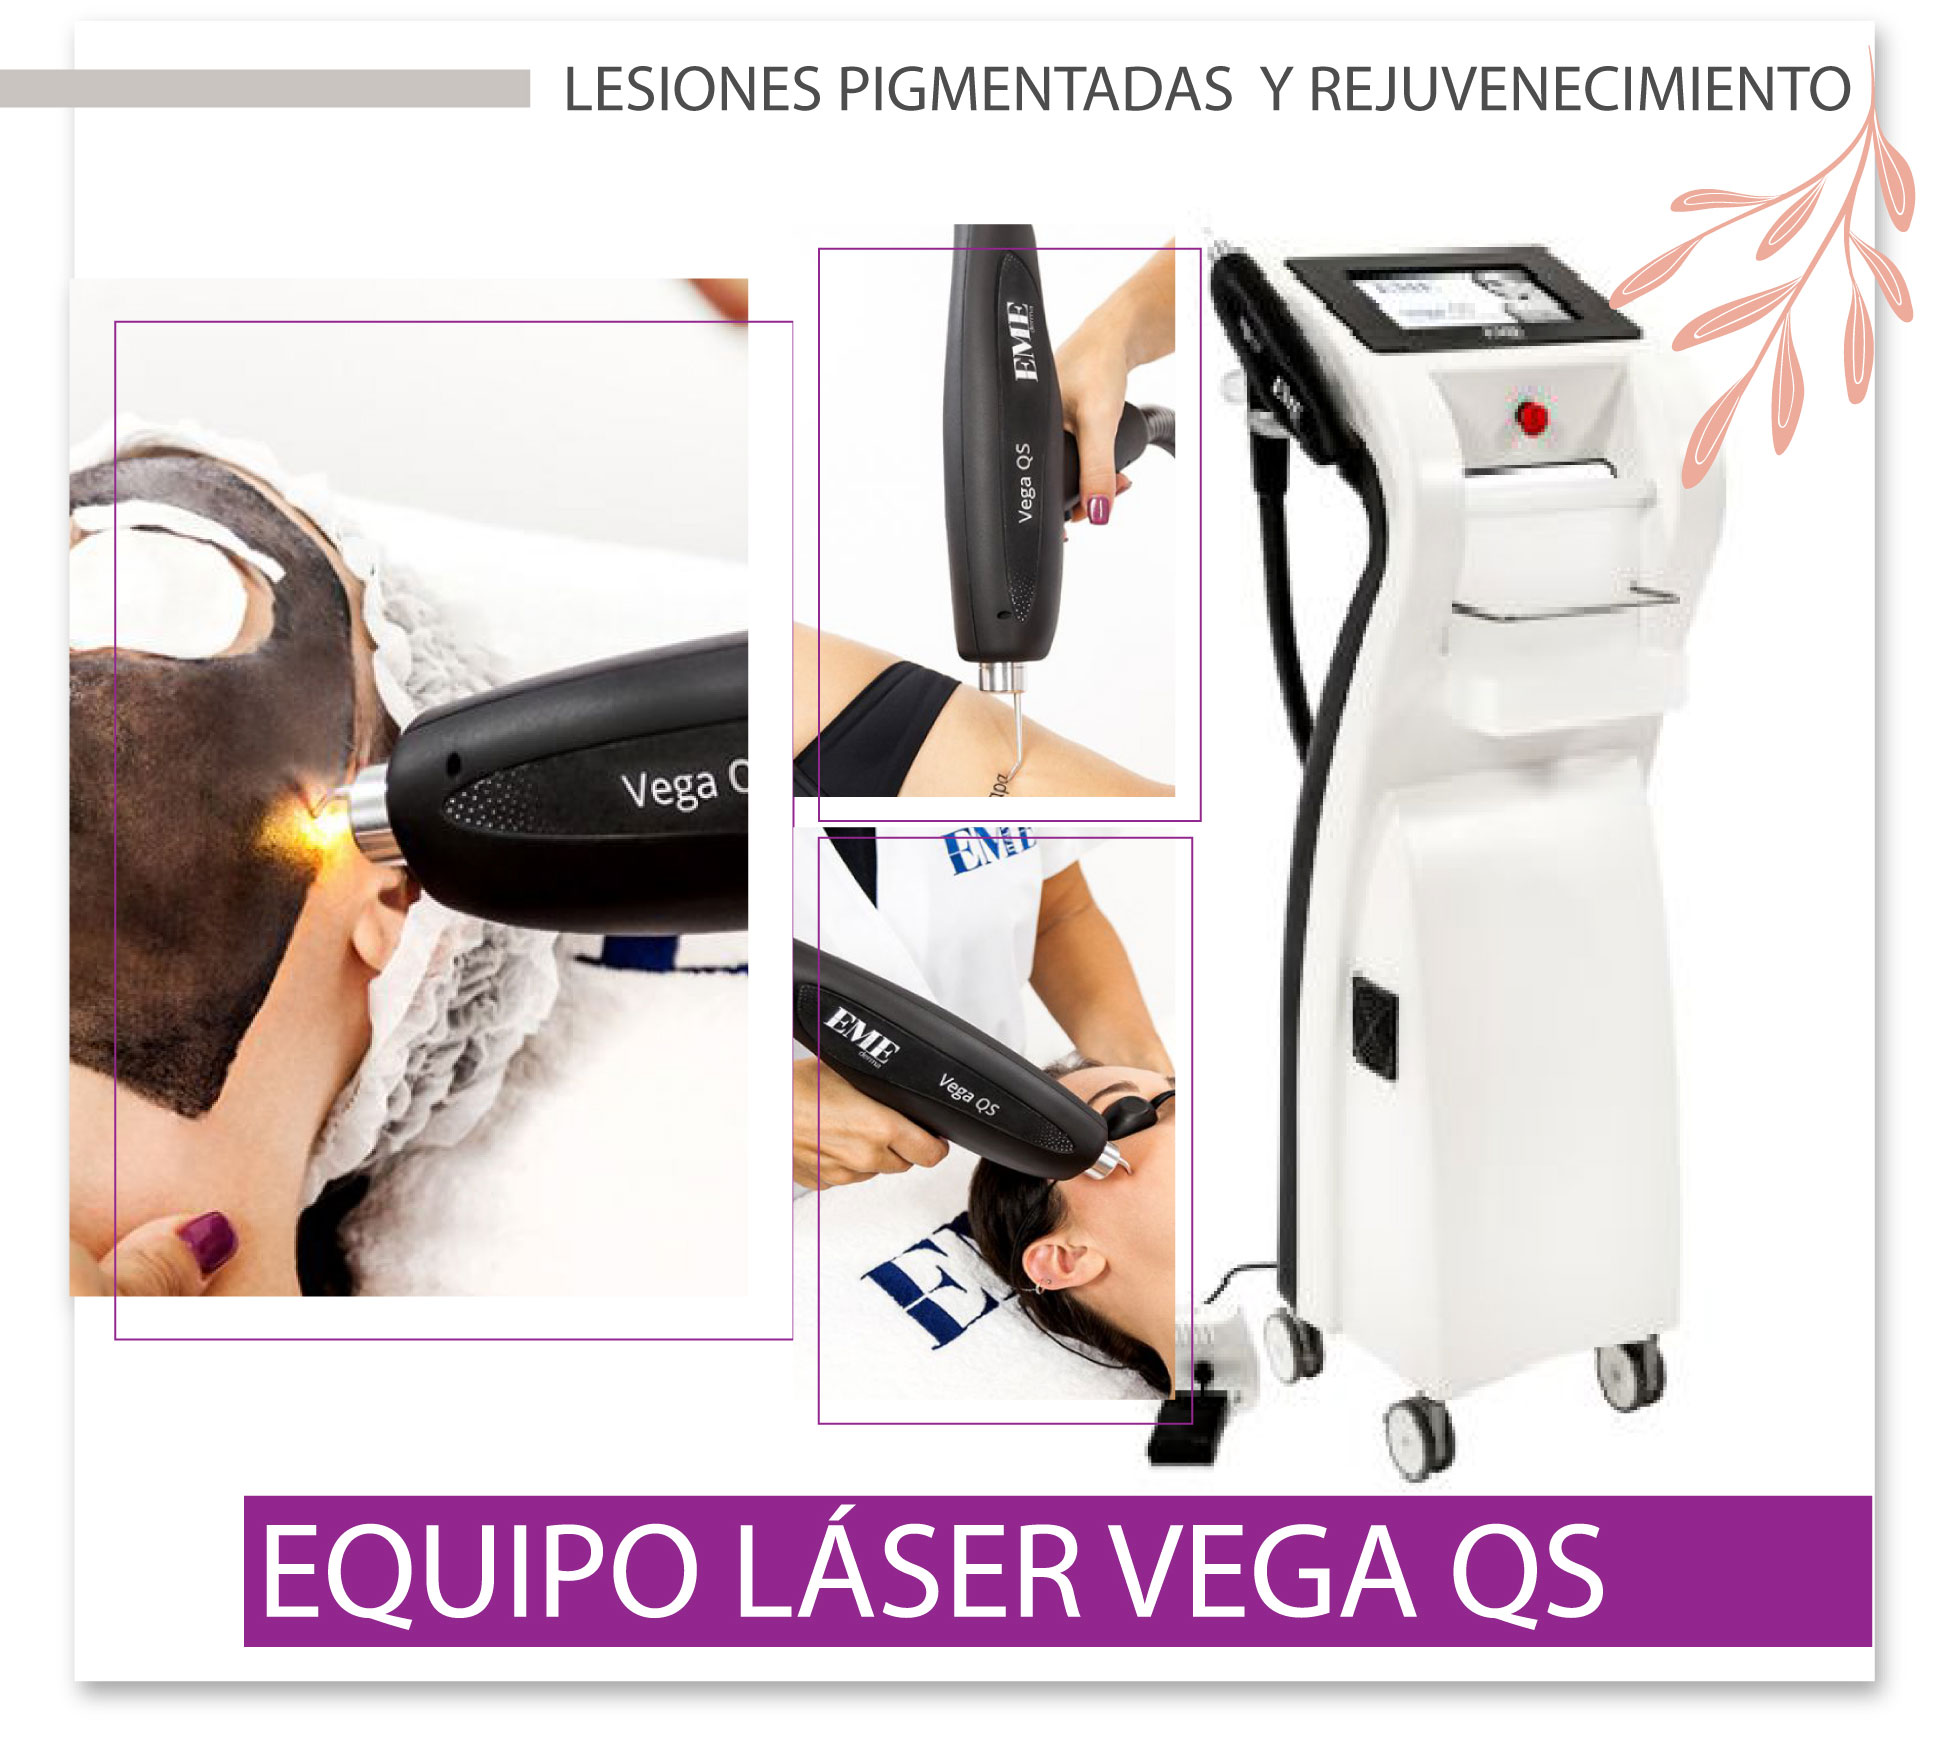 Laser Vega QS